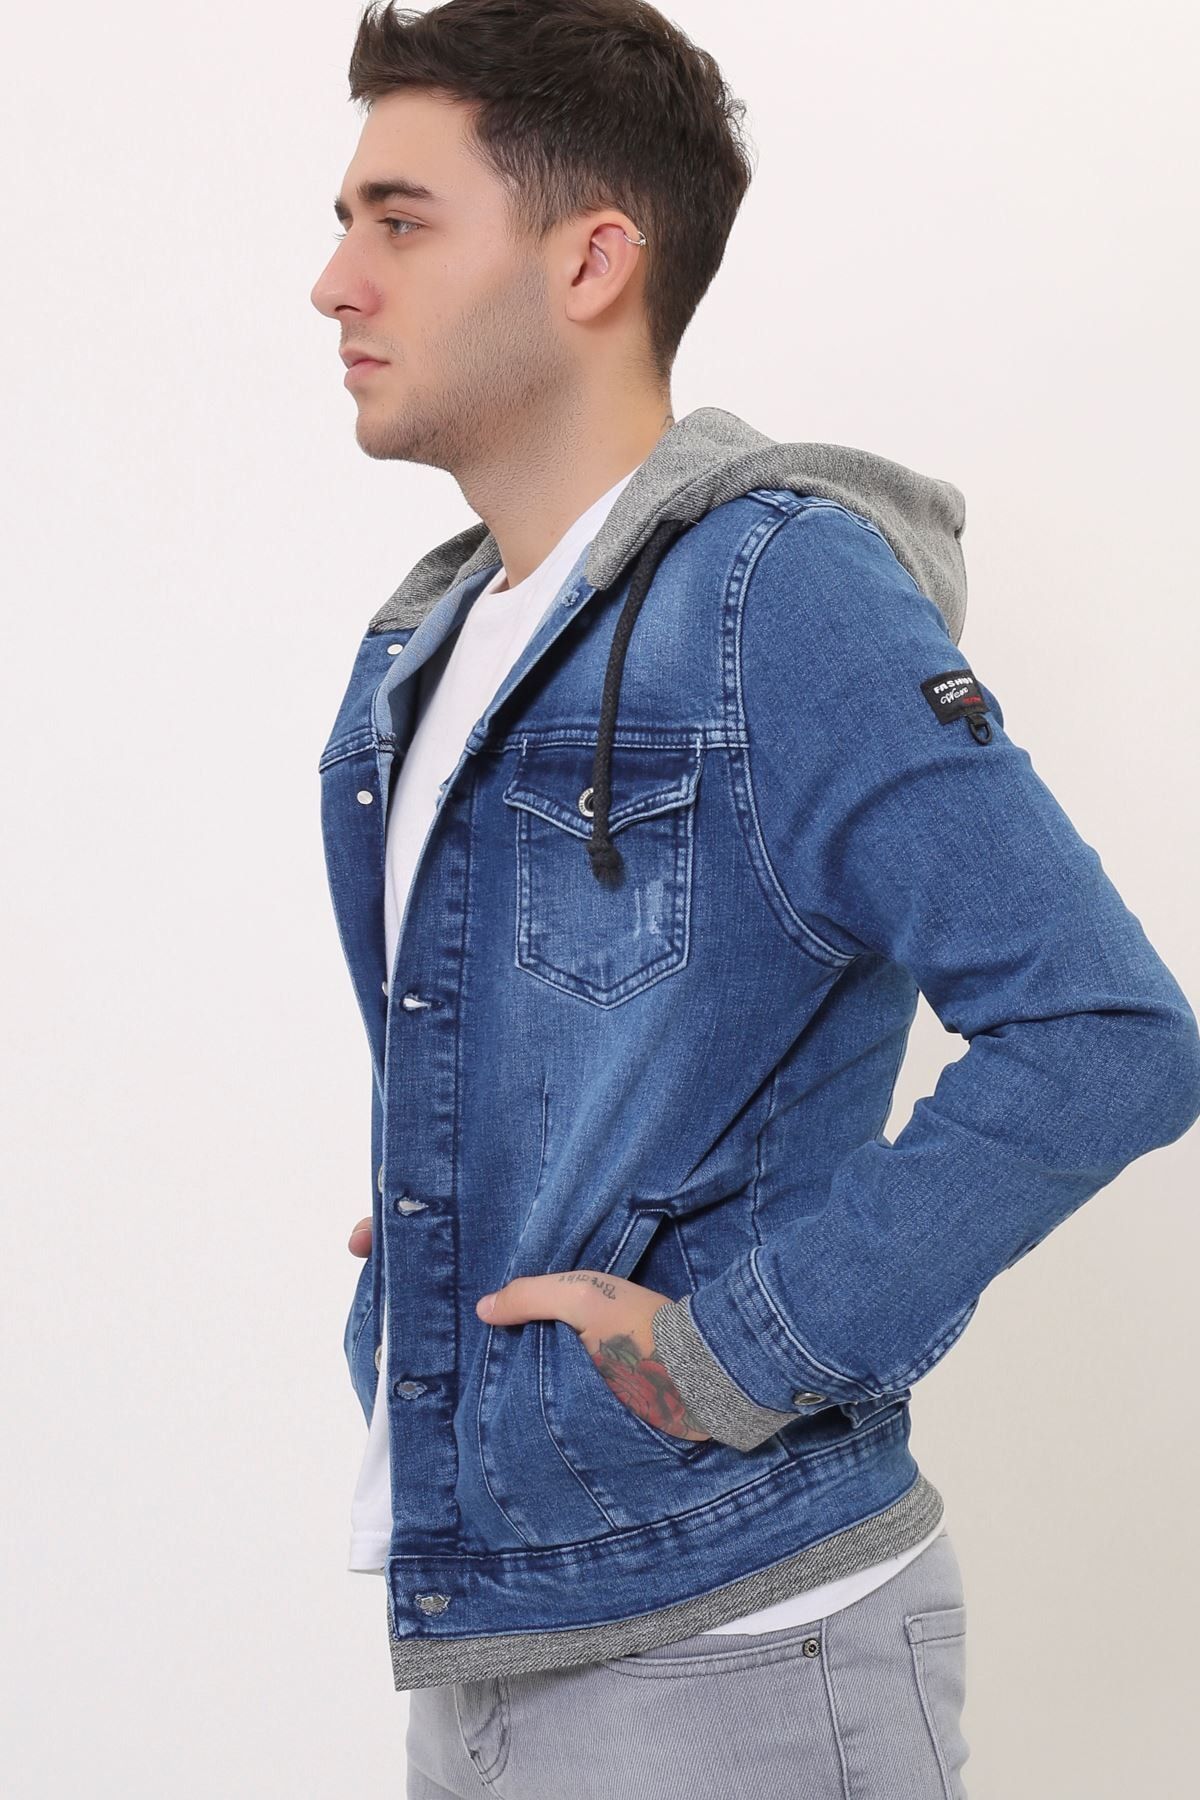 LTC Jeans Kapüşonlu Erkek Mavi Kot Ceket Baskı Detay